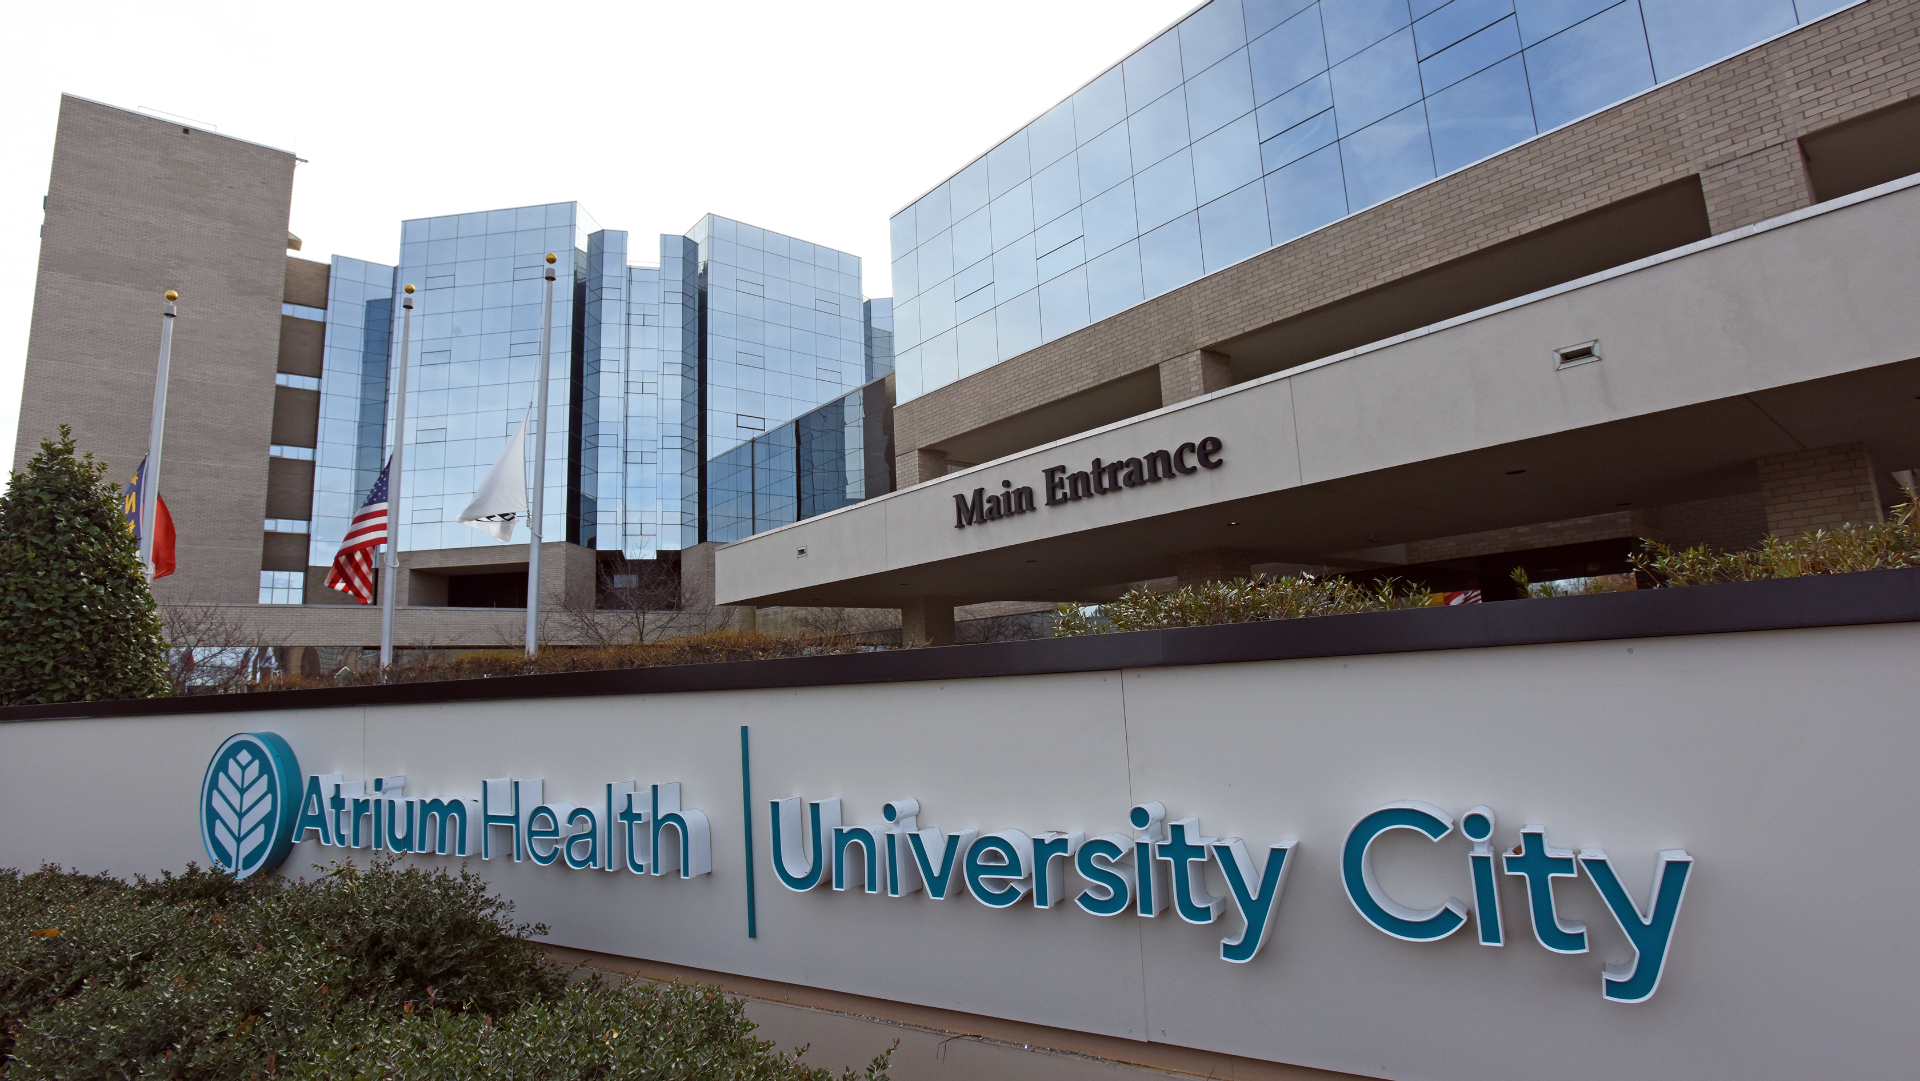 Atrium Health University City became the hospital's official name on Dec. 1, 2018.